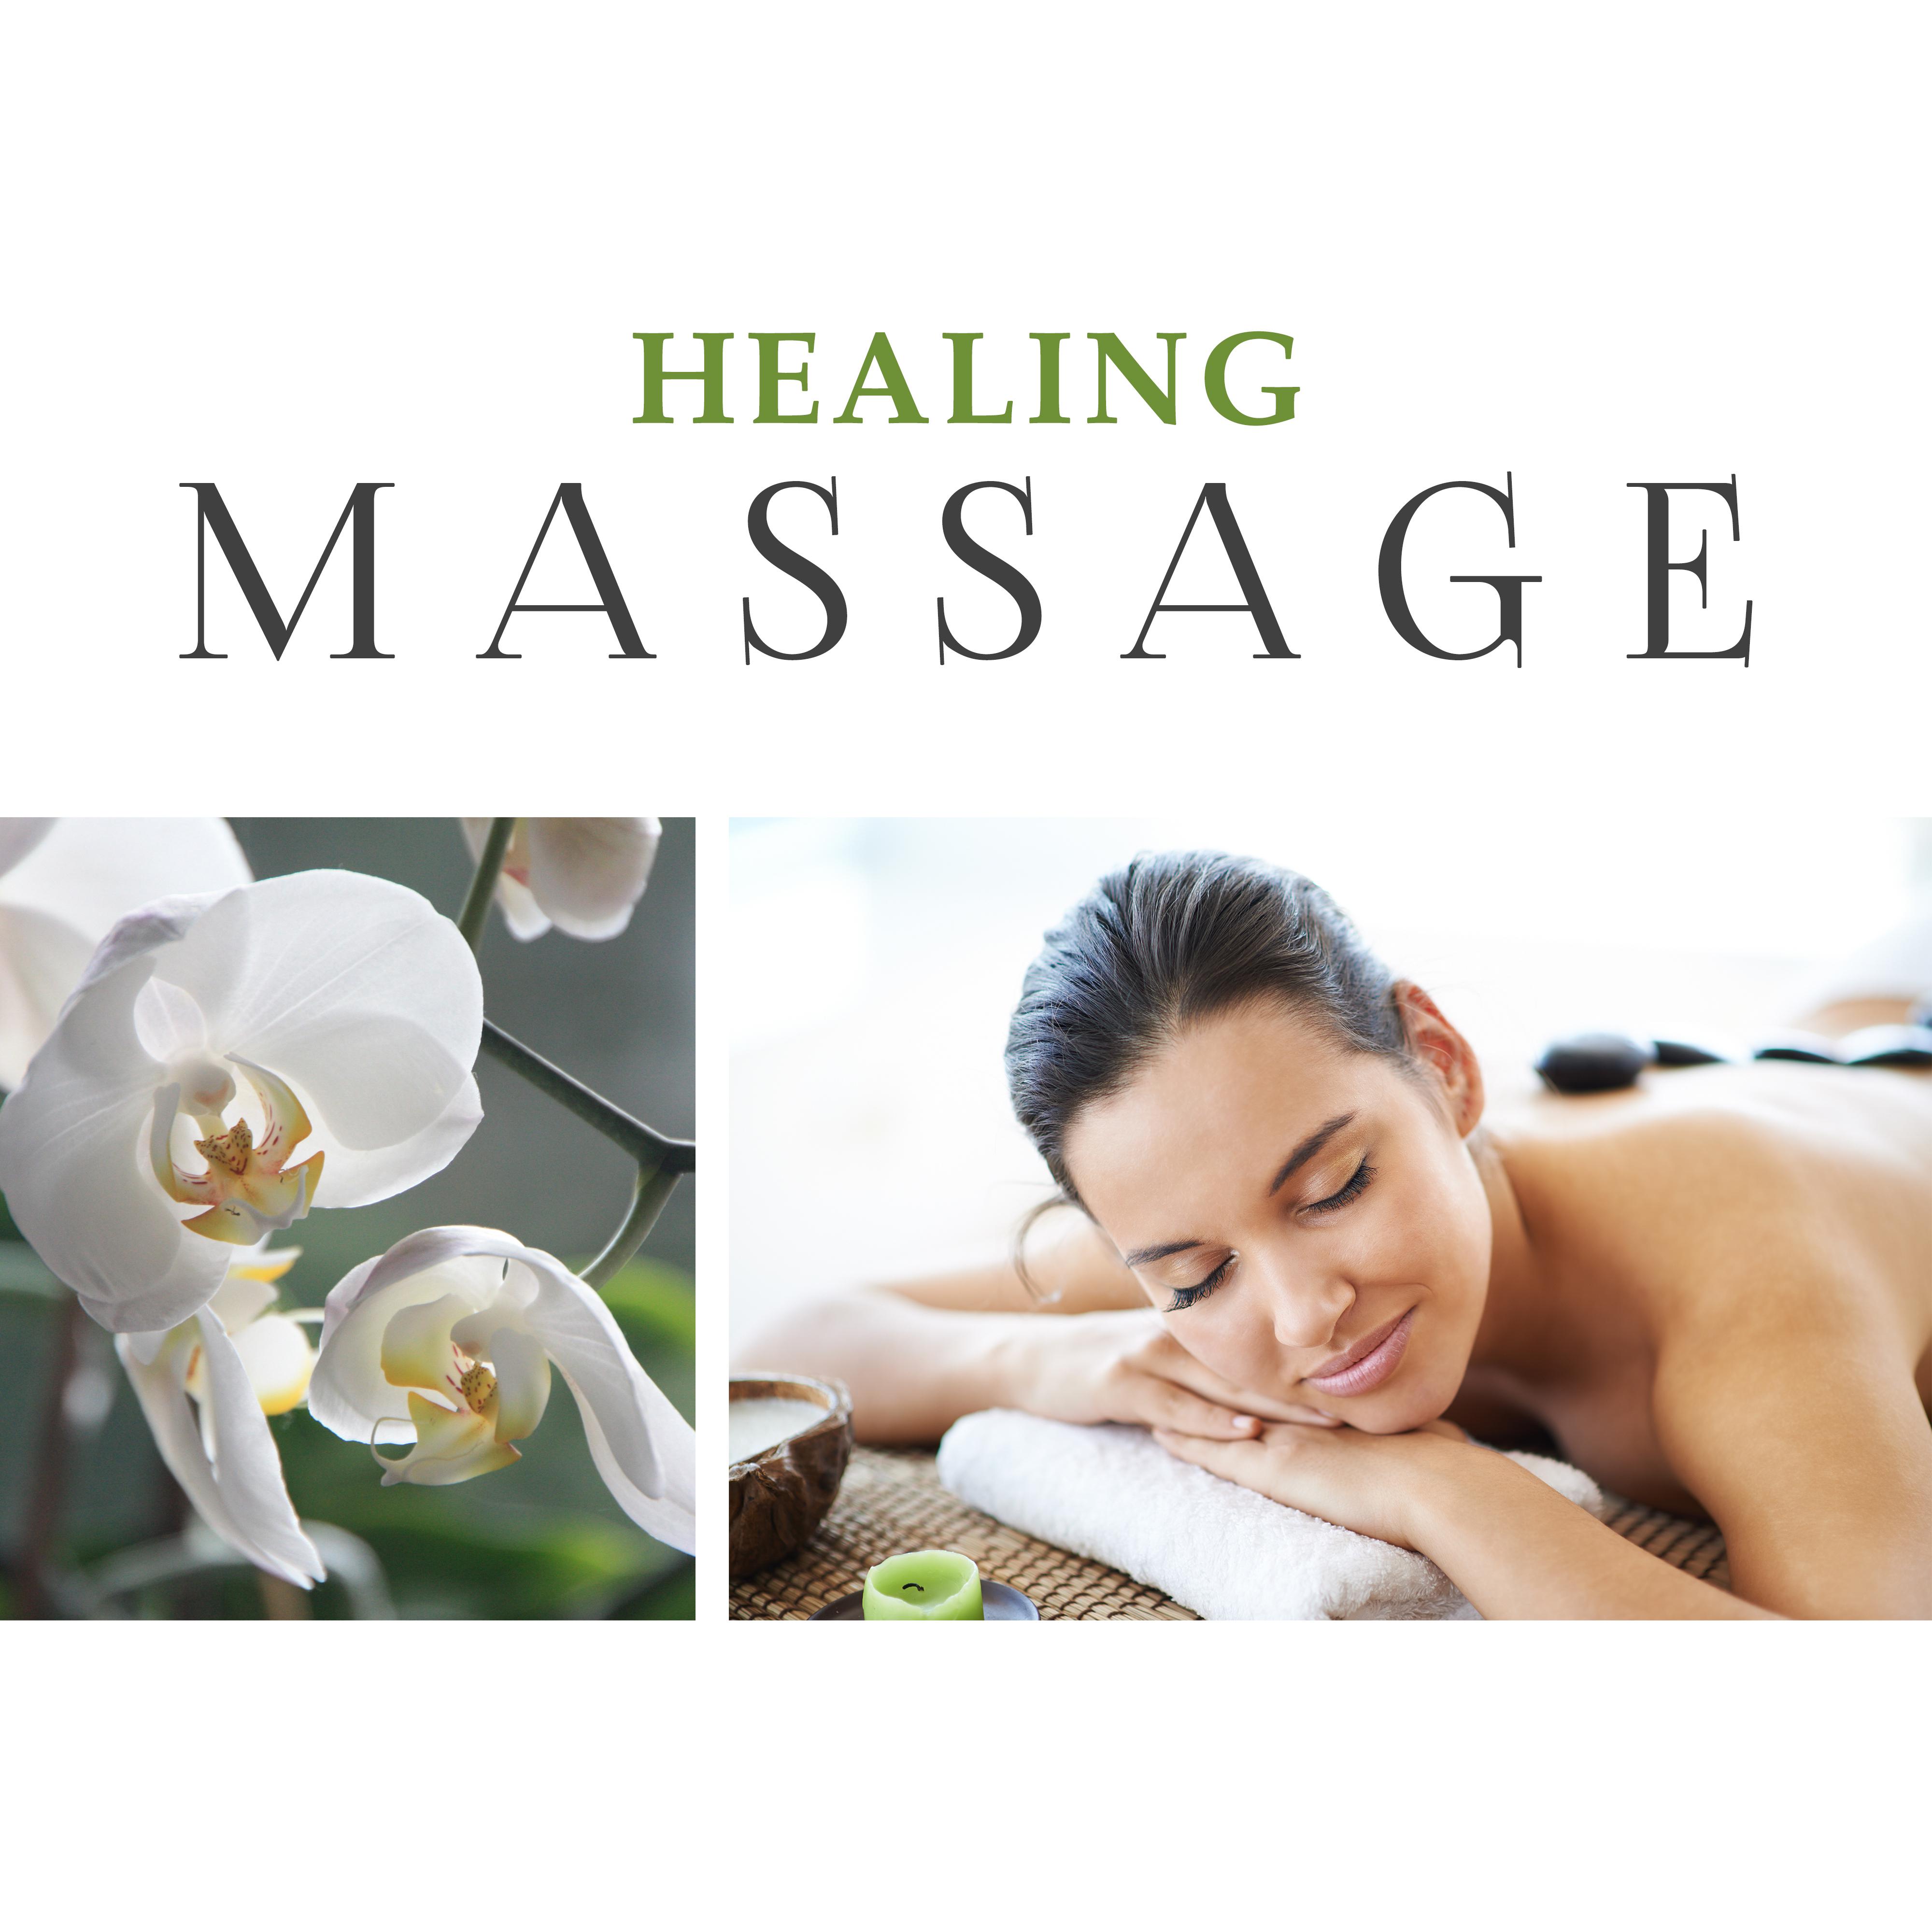 Healing Massage – Deep Relaxation, Pure Massage, Spa, Wellness, Zen, Relief Stress, Green Garden Sounds